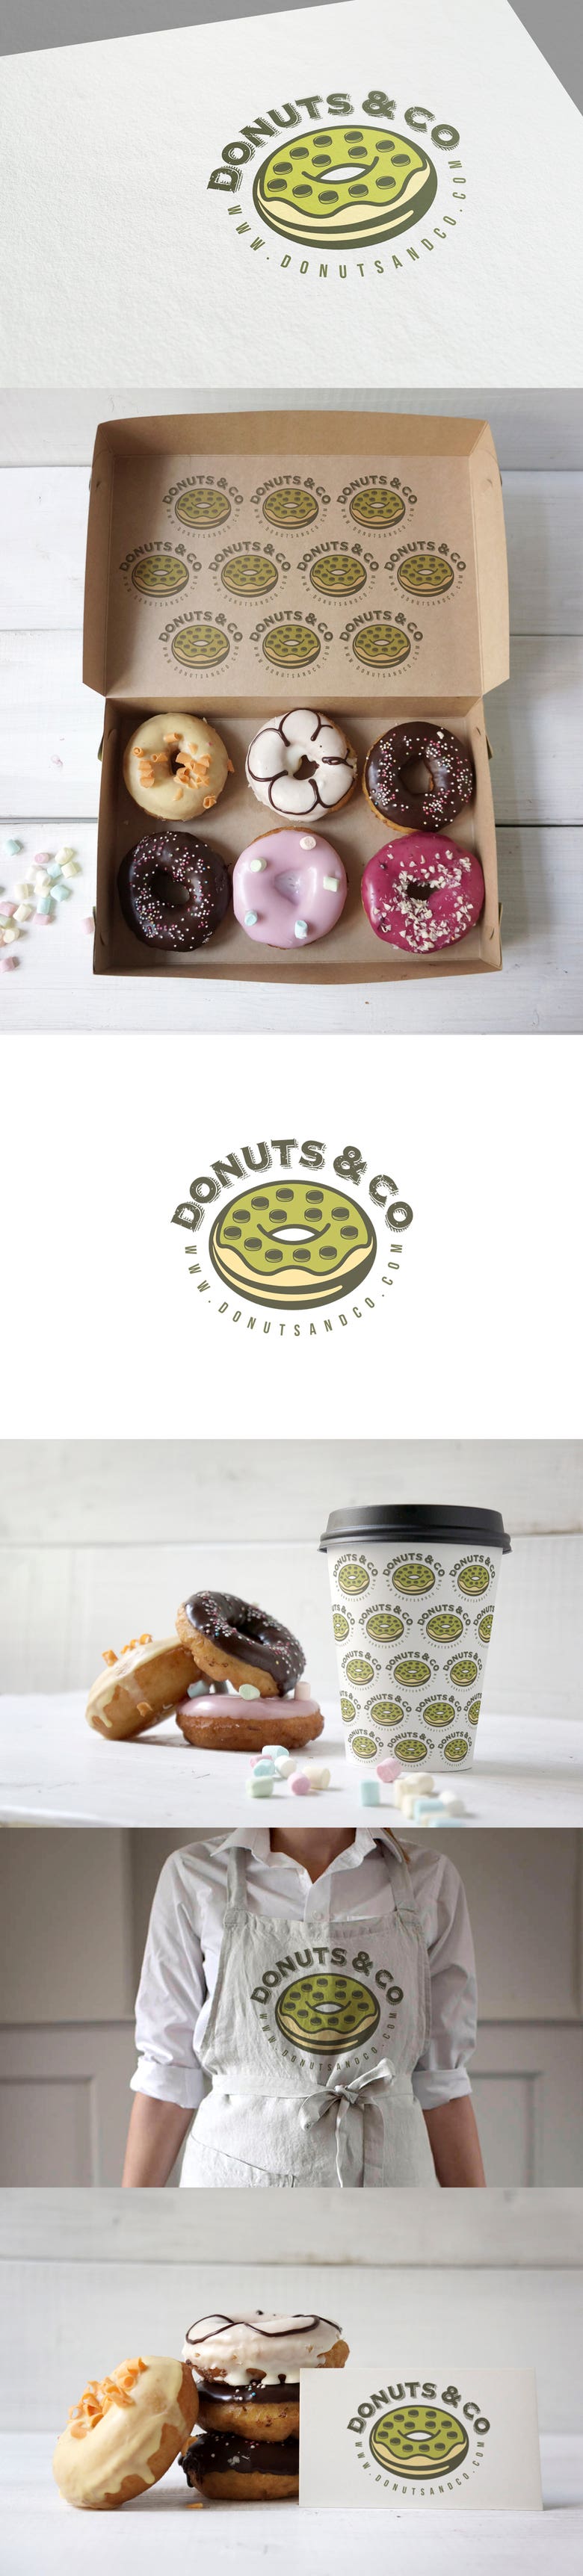 DONUTS & CO LOGO